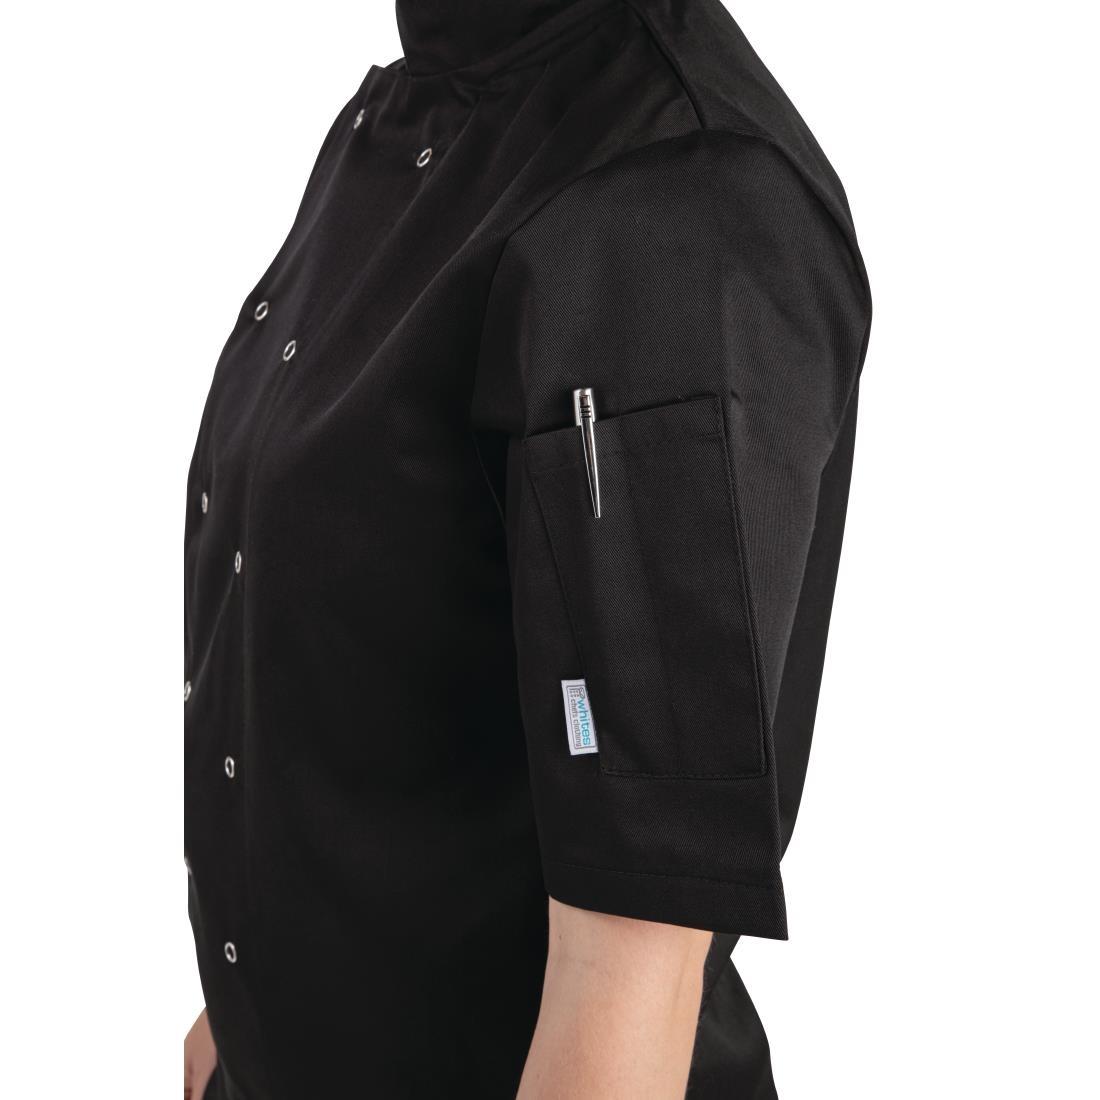 Whites Vegas Unisex Chefs Jacket Short Sleeve Black XS - A439-XS  - 4